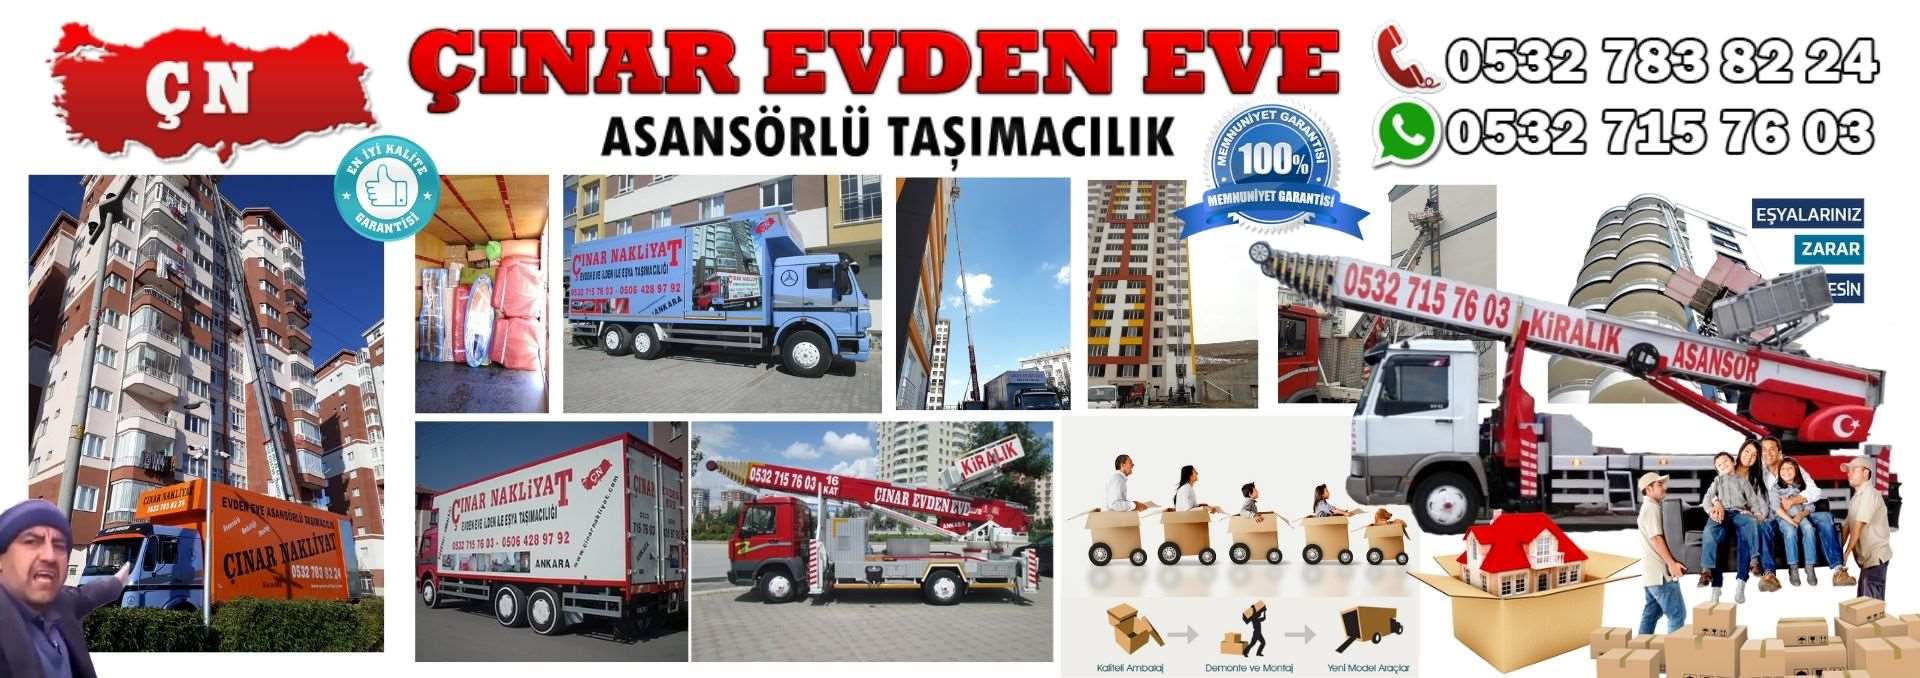 Ankara Ümitköy Evden Eve Asansörlü Ev Eşyası Taşıma 0532 715 76 03